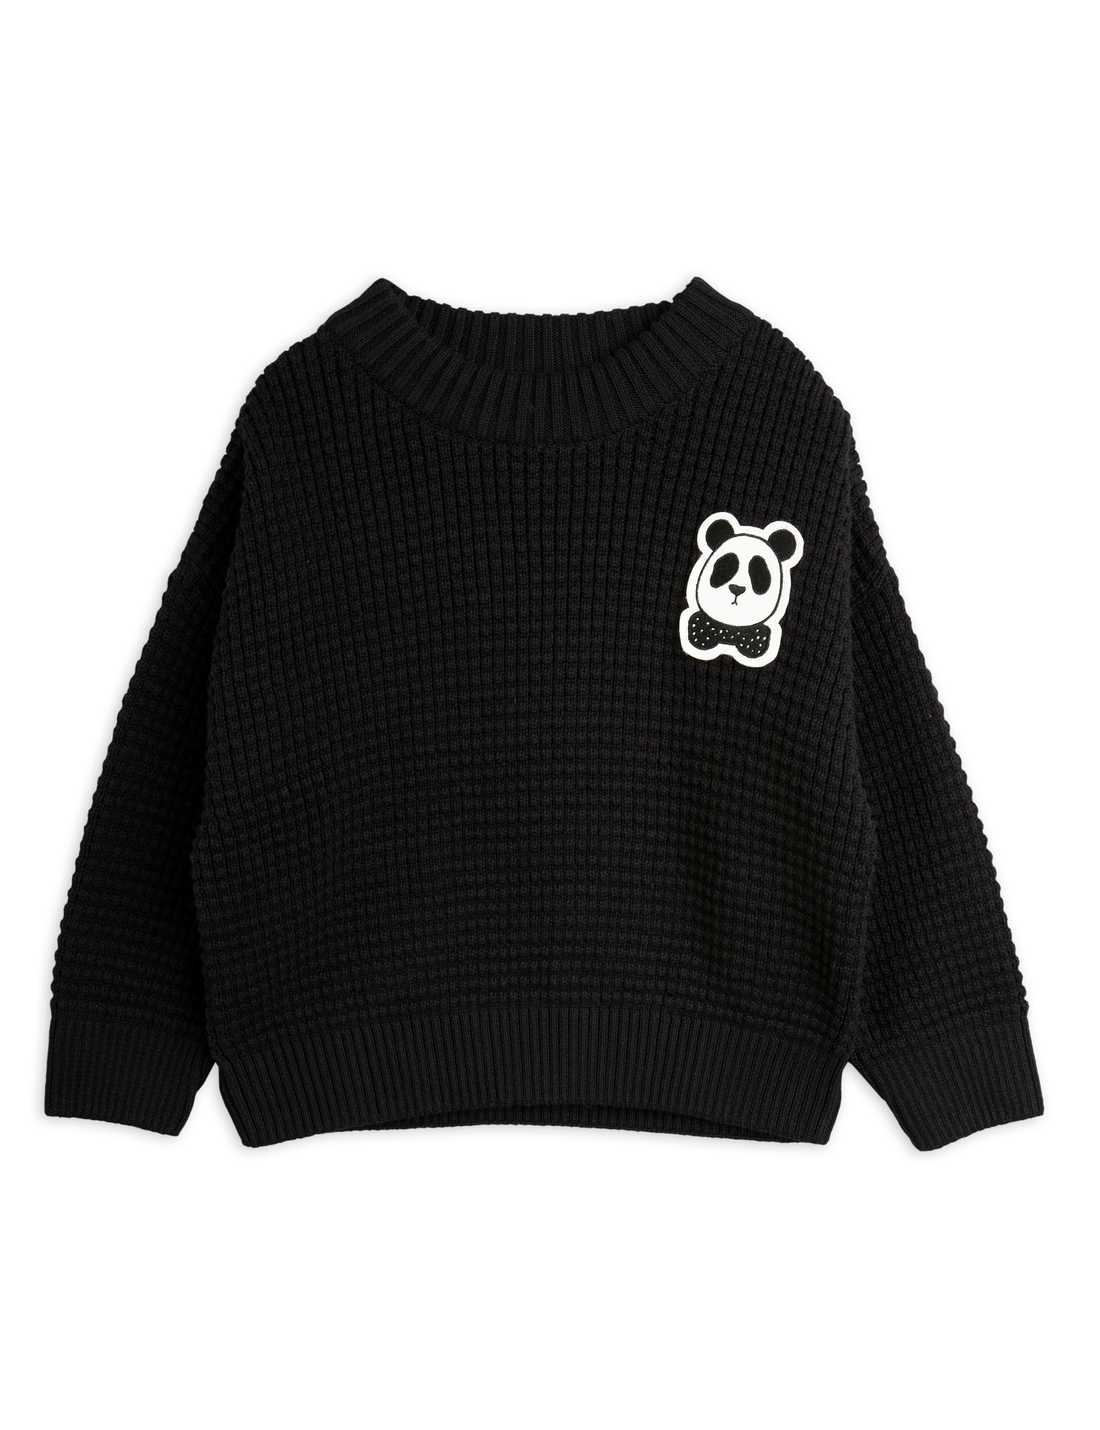 Panda Knitted Sweater